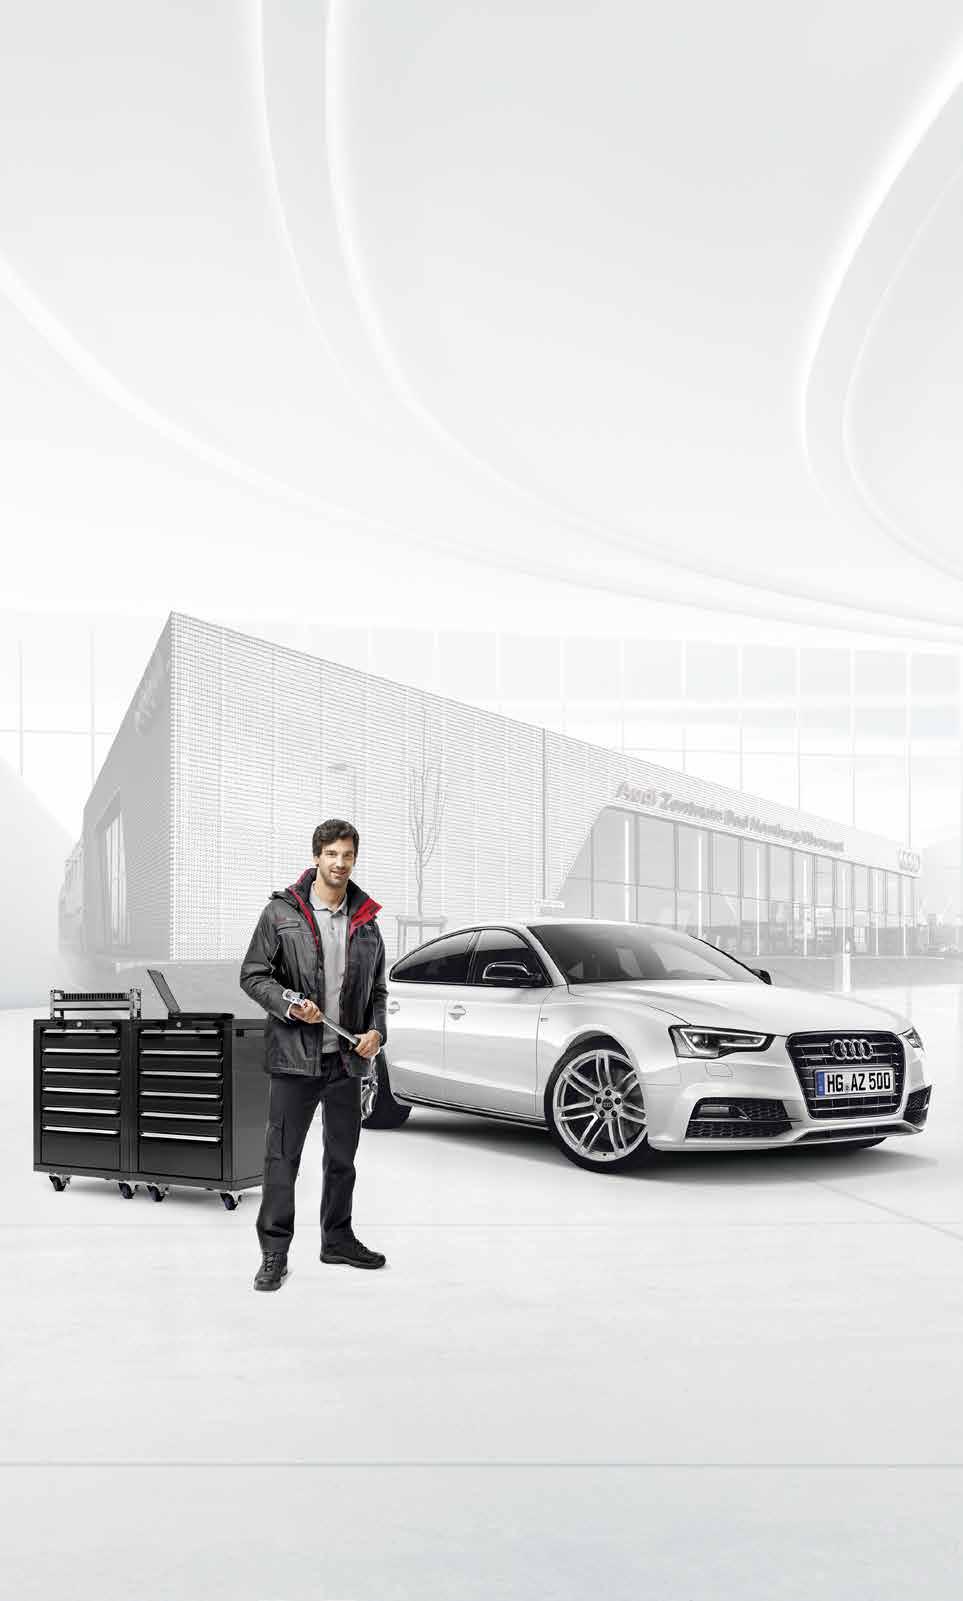 Besuchen Sie uns auf der AIA. Das Audi Zentrum Bad Homburg/Oberursel präsentiert sich bei der bekannten, diesjährigen Automobilausstellung Autos in der Allee am 23. und 24.04.2016.